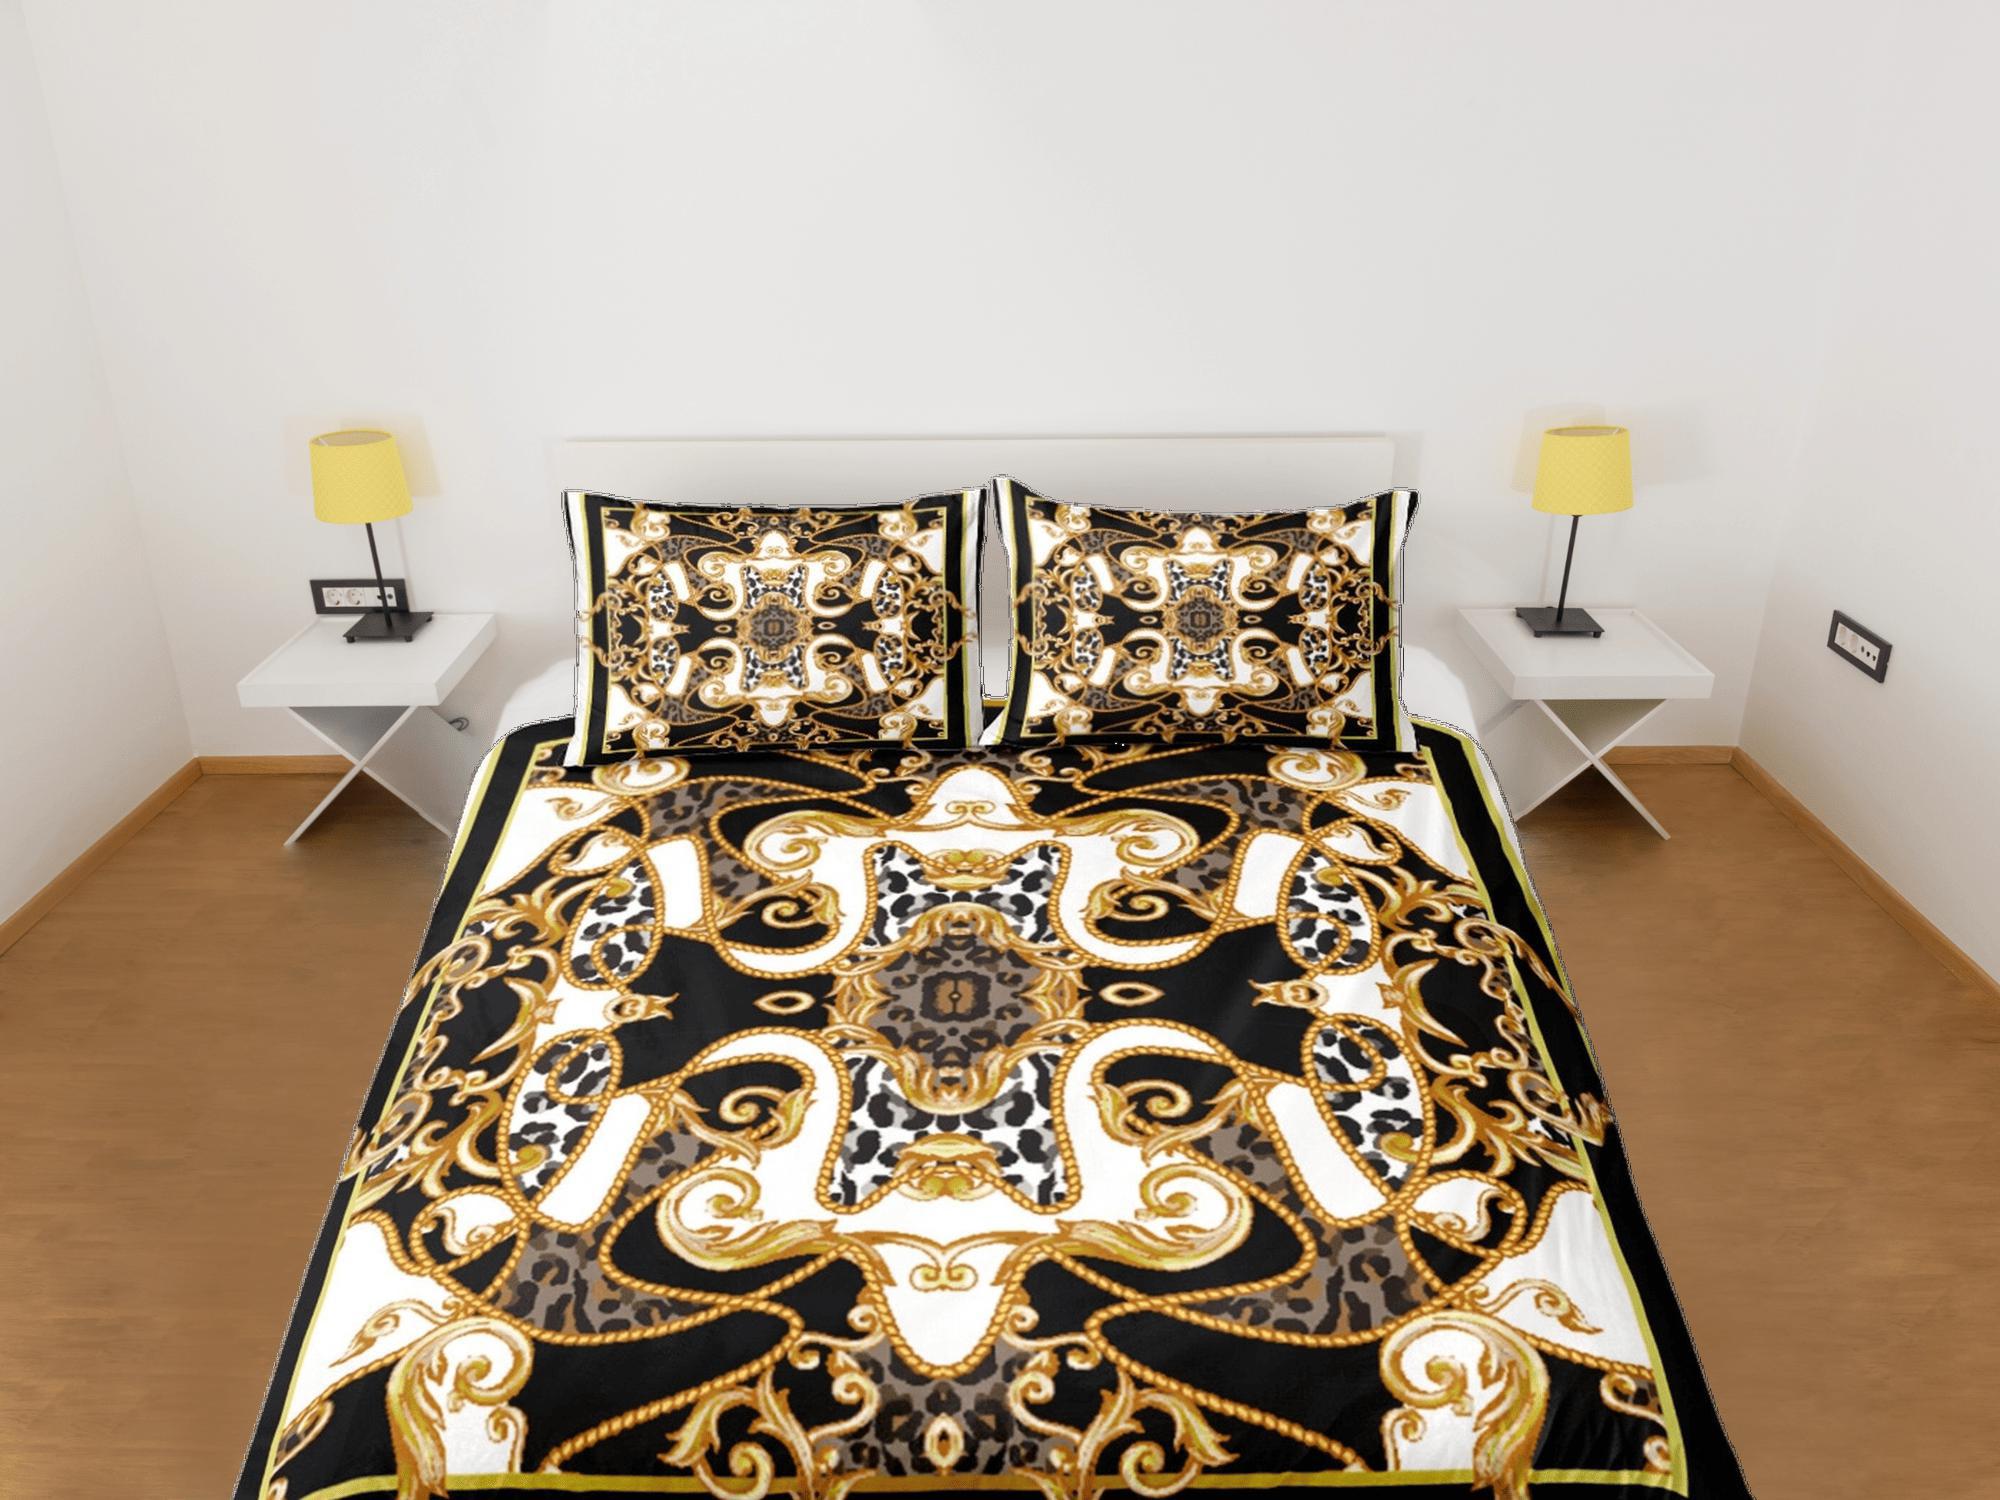 daintyduvet Mixed Baroque Gold Black & White Luxury Duvet Cover Set Aesthetic Bedding Set Full Victorian Decor, King Duvet Cover Queen Duvet